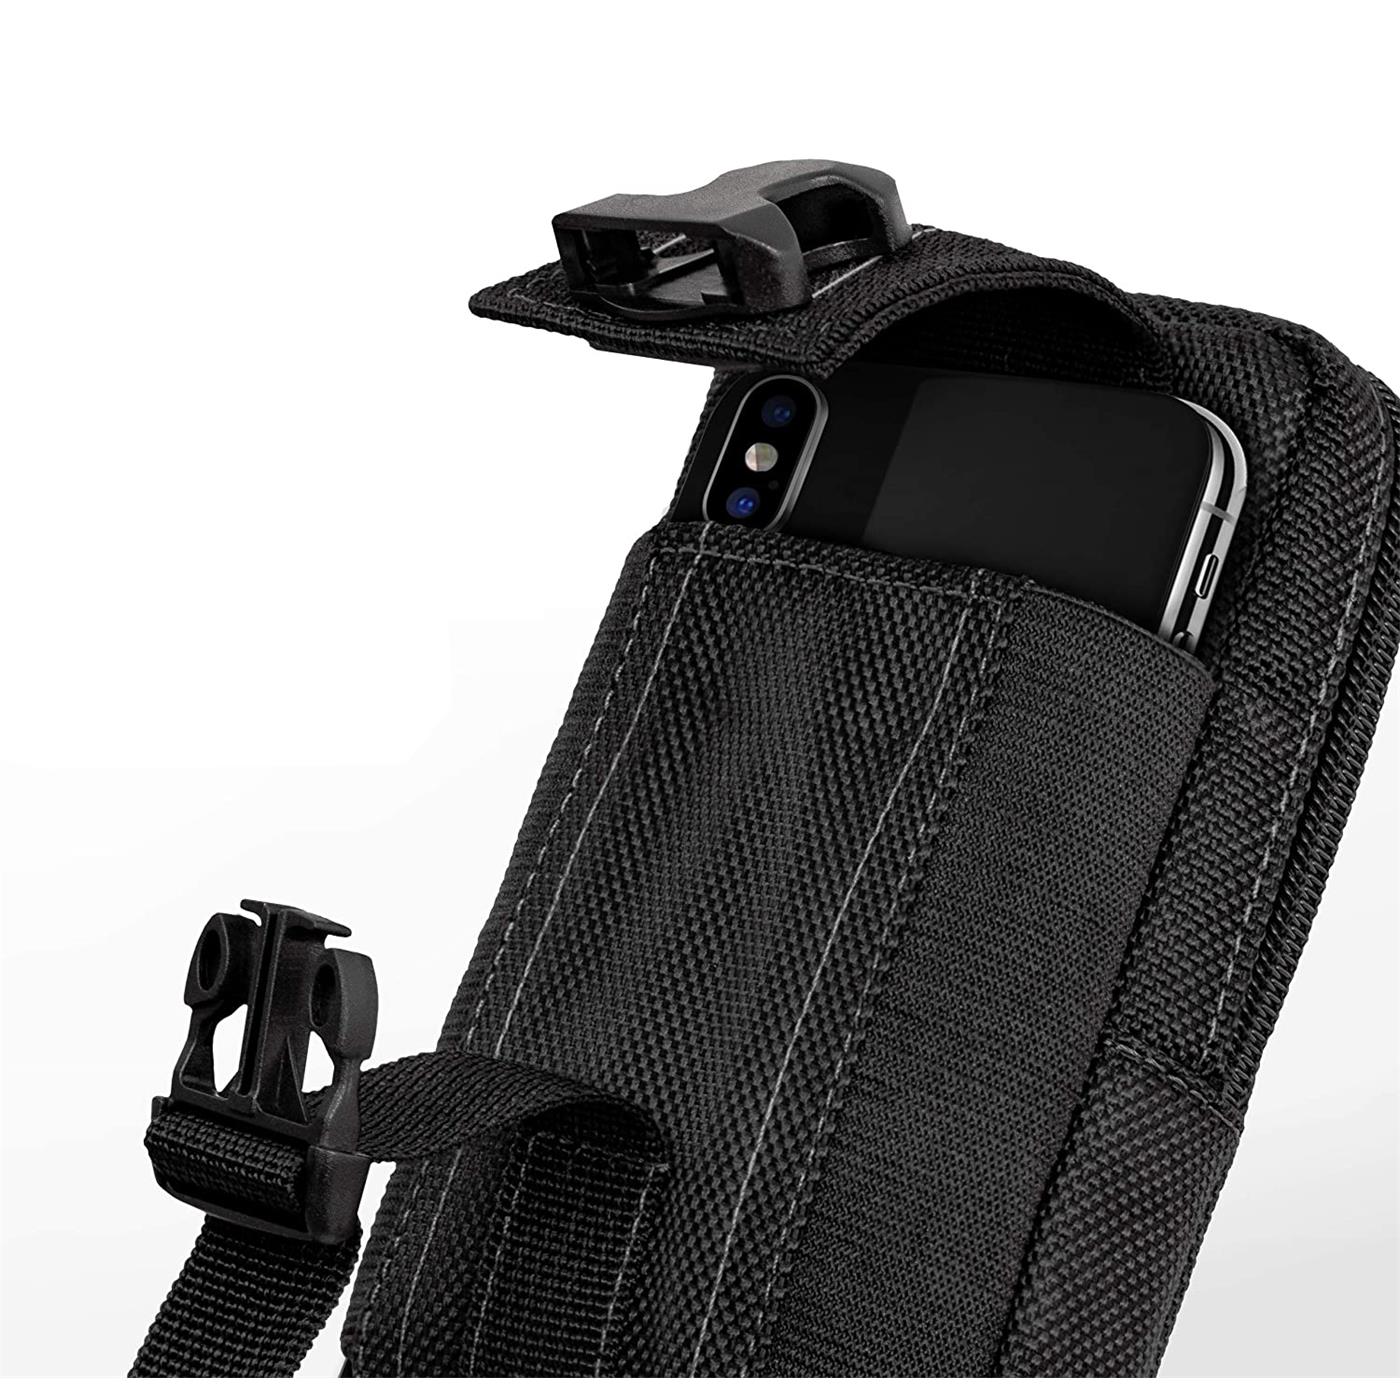 Indexbild 5 - Gürtel Tasche Für Xiaomi Modelle Handy Hülle Schutzhülle Case Clip Etui Nylon